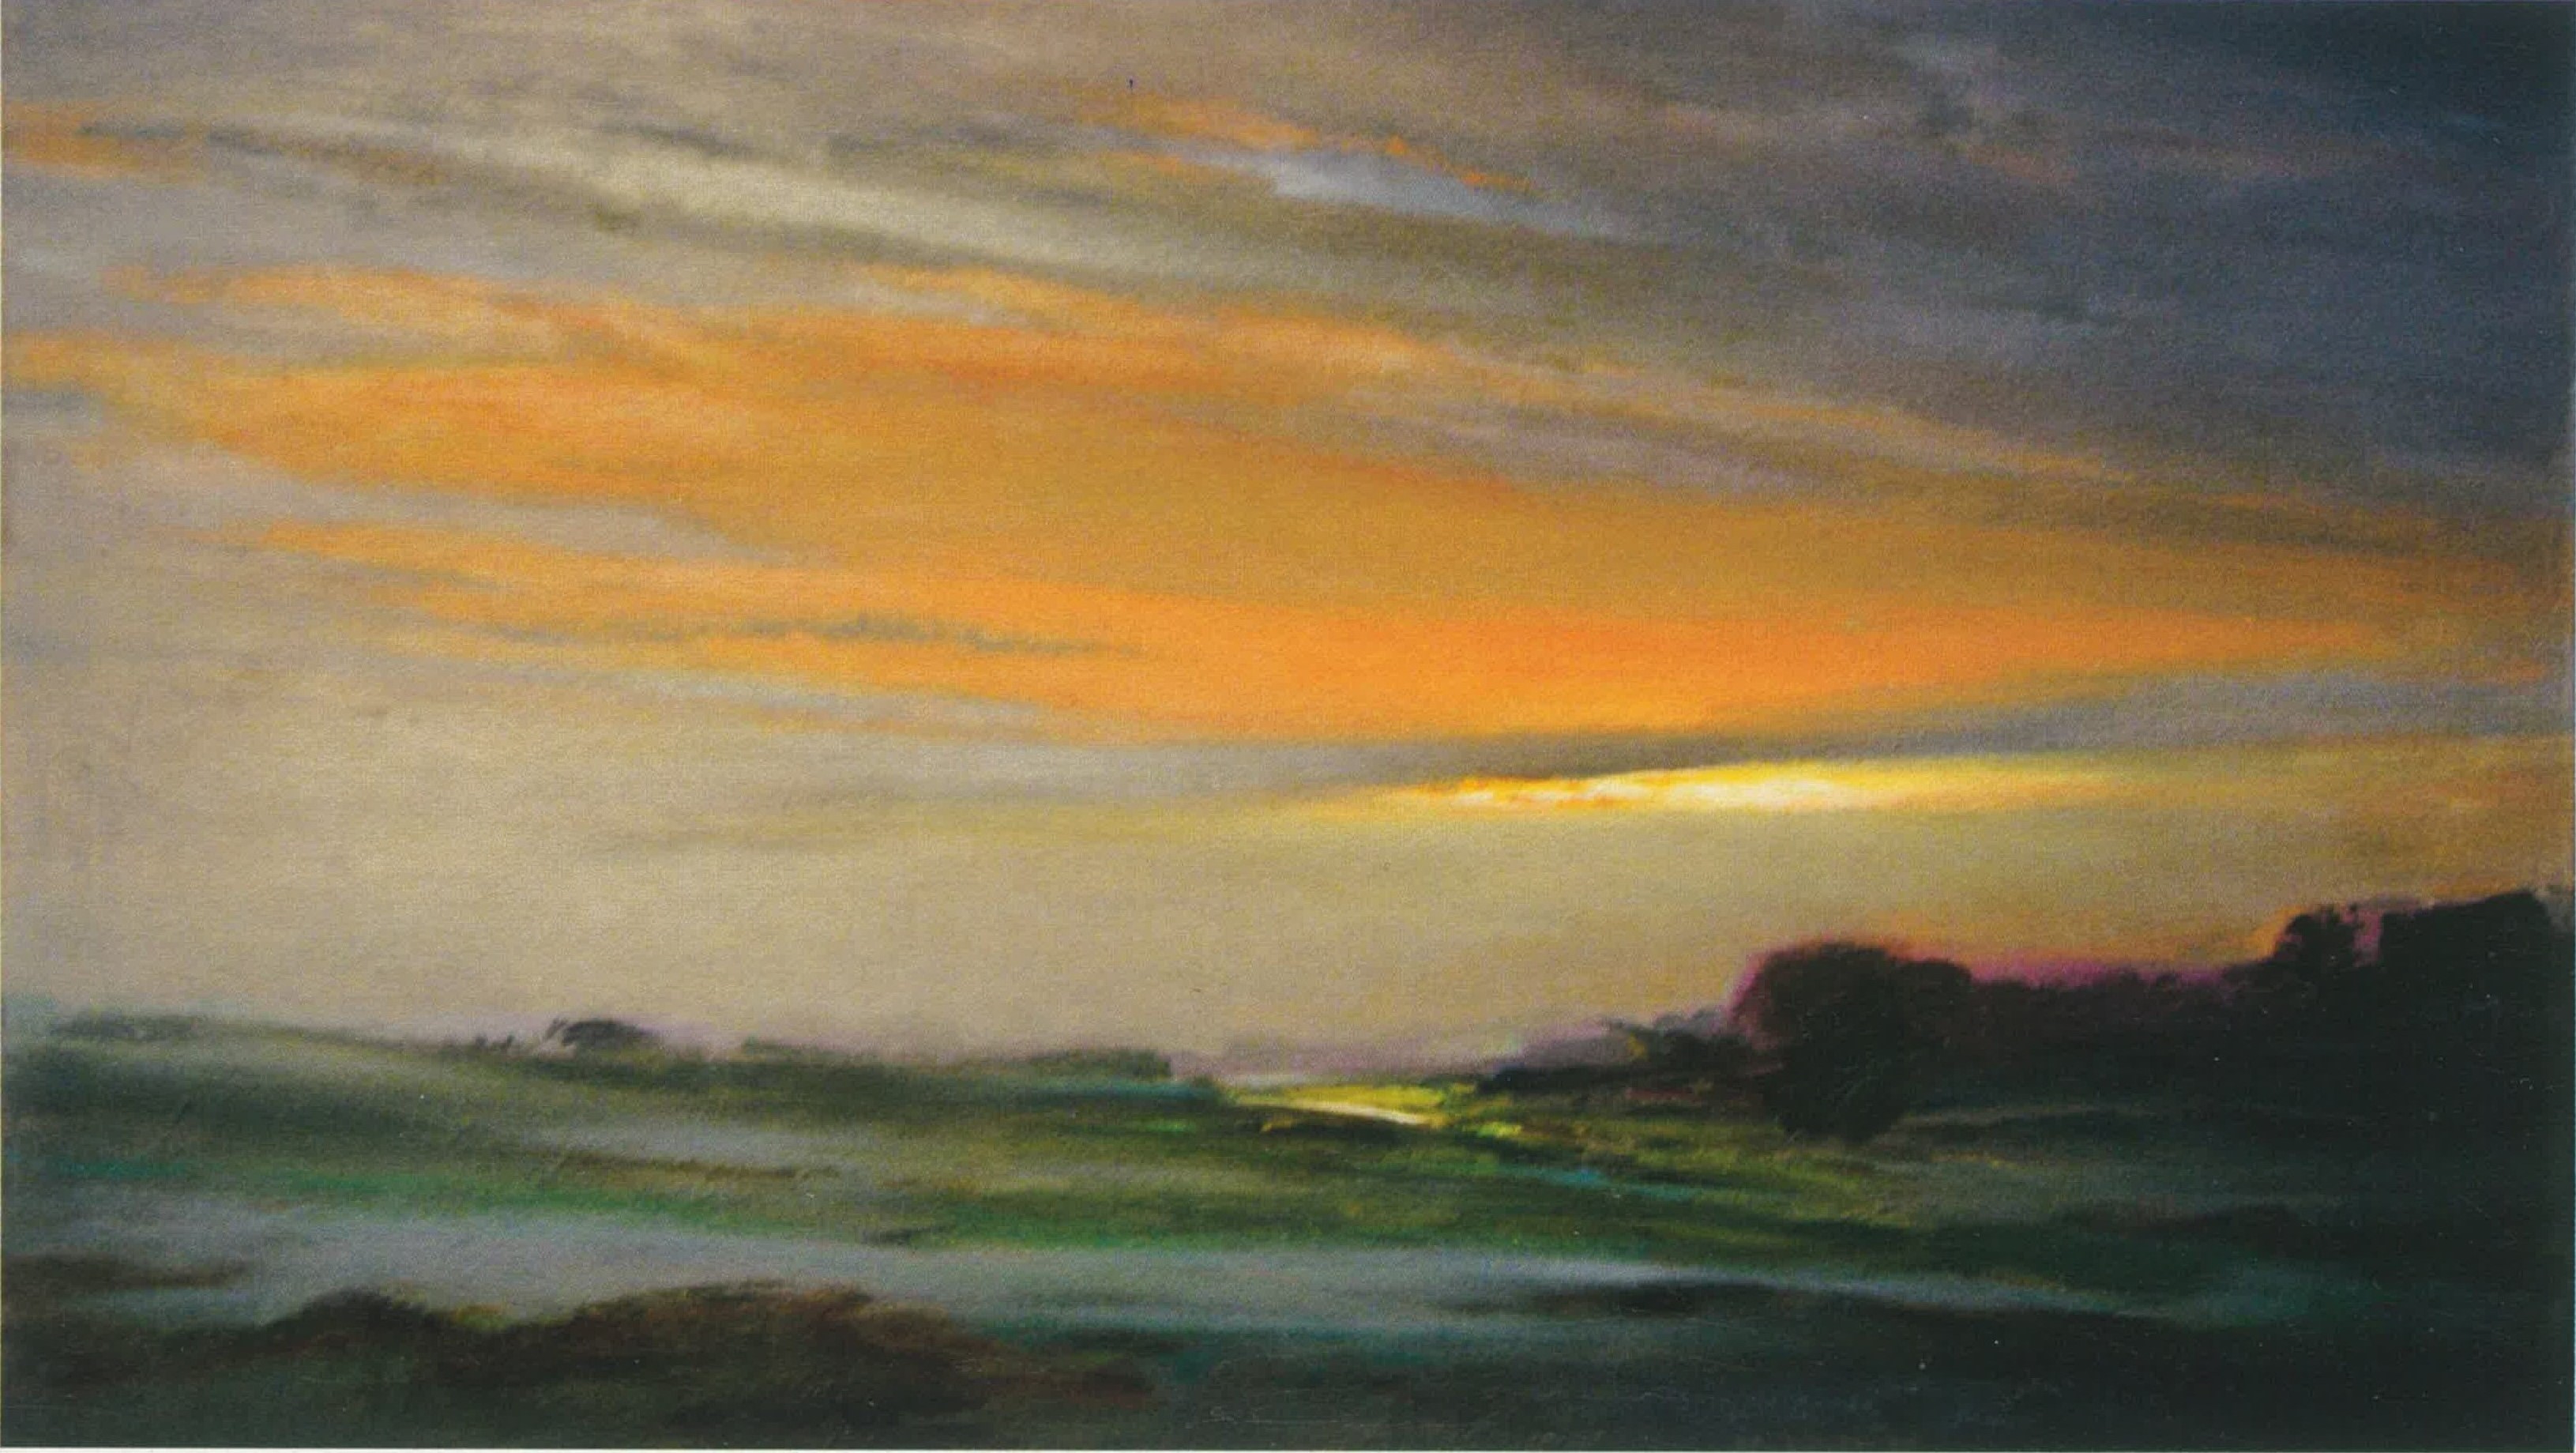 Krzysztof Pęciński, Untitled/ ohne Title (acrylic, 126x185cm), no date